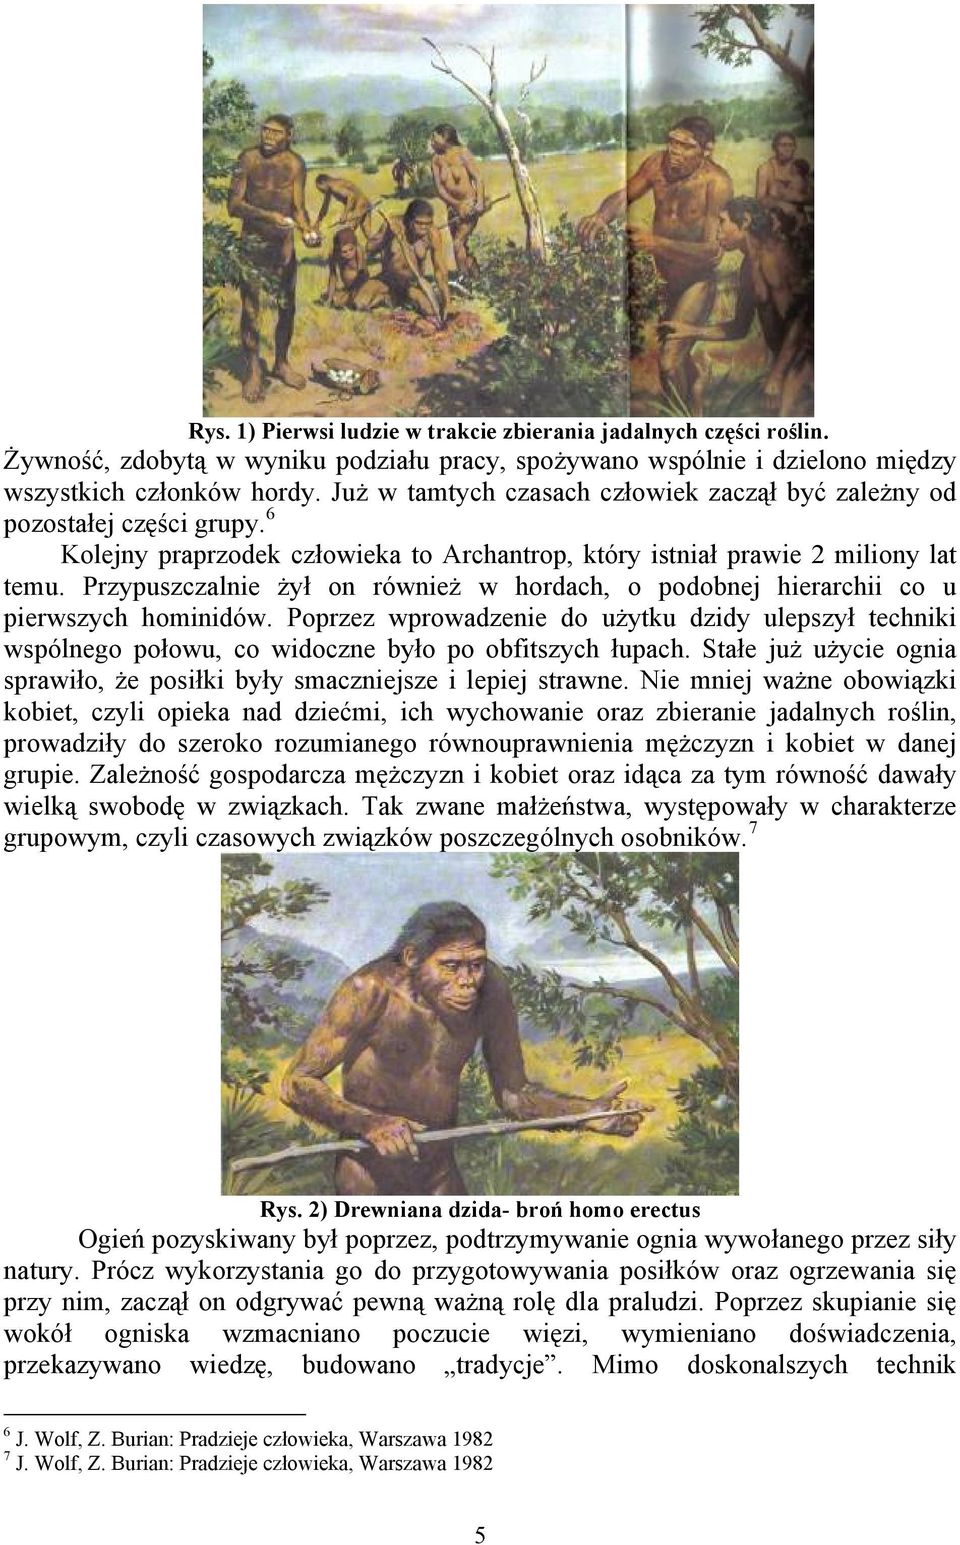 Przypuszczalnie żył on również w hordach, o podobnej hierarchii co u pierwszych hominidów.